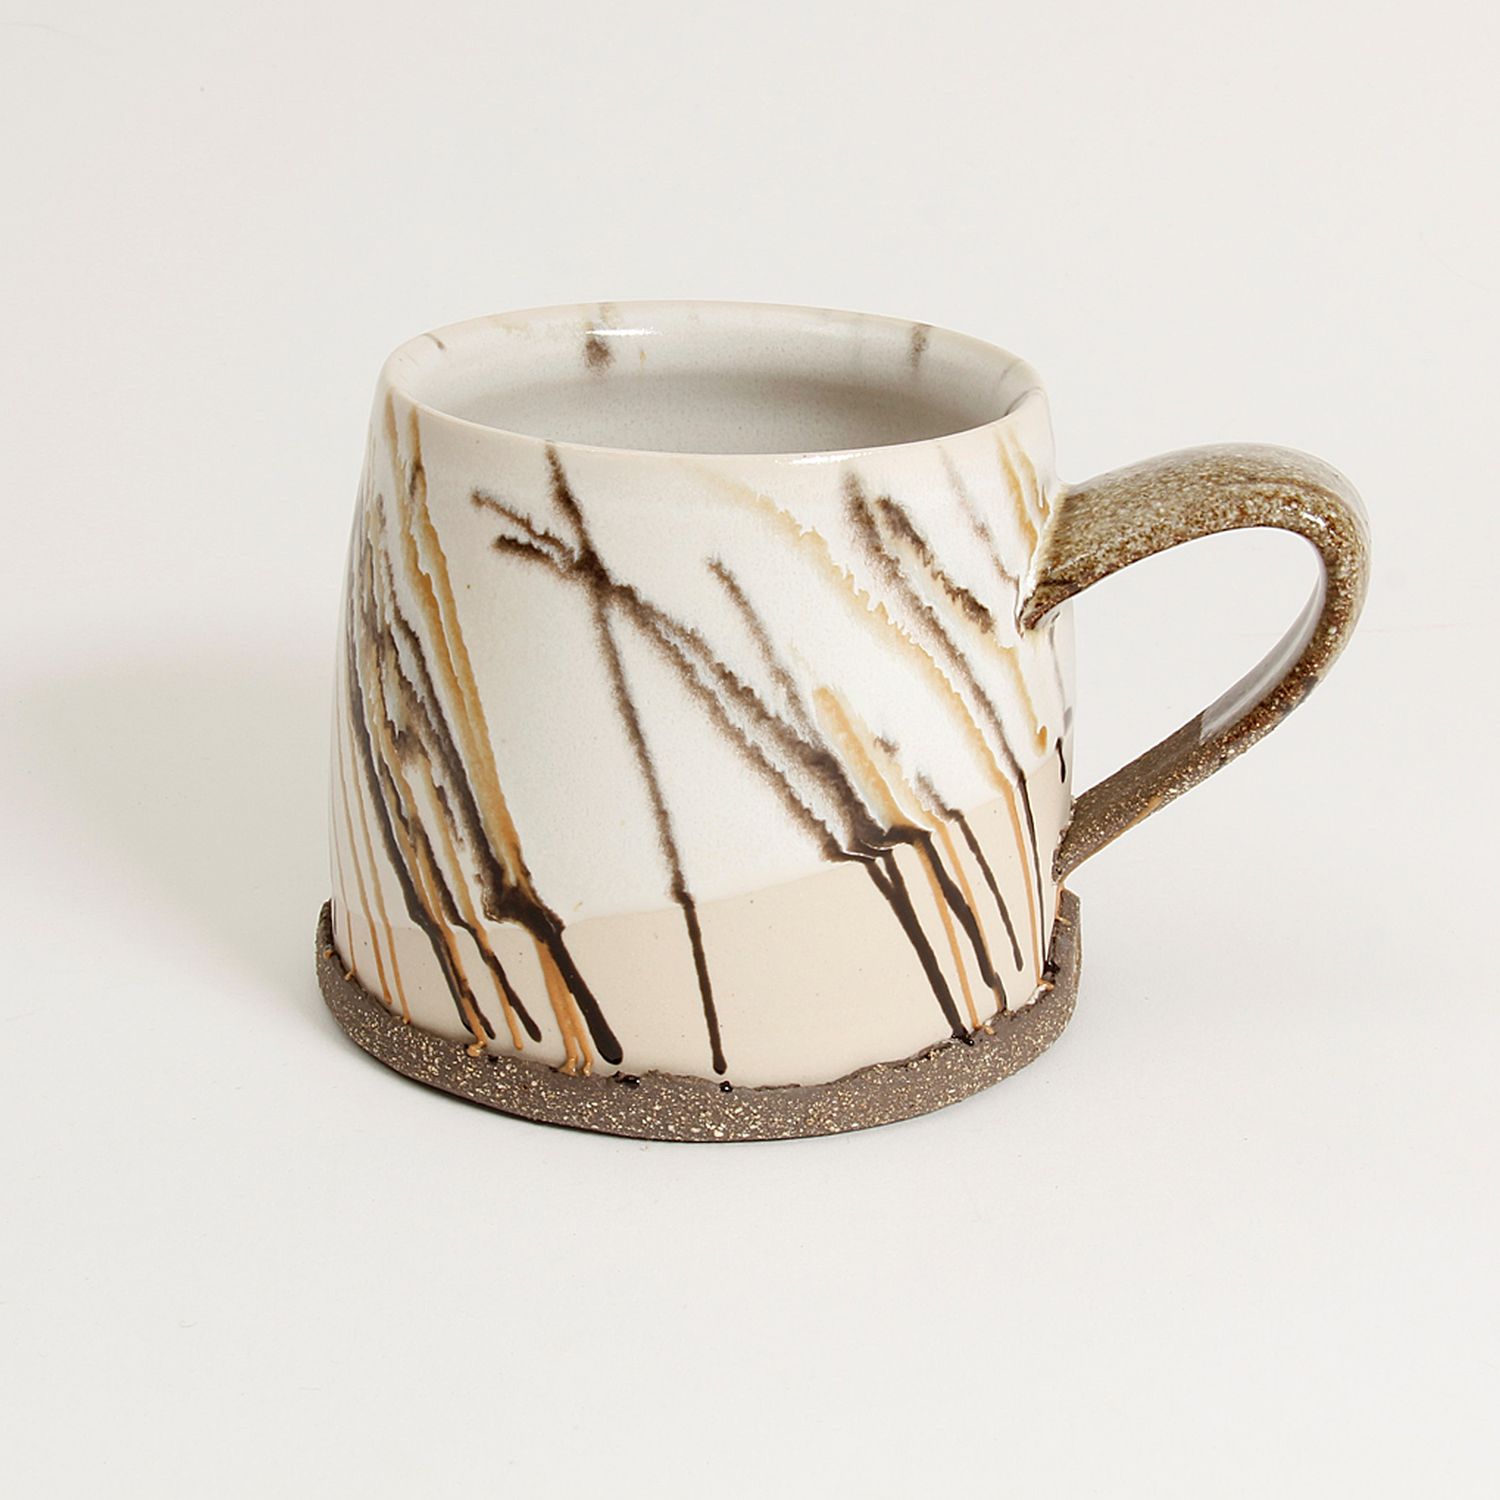 Gracia Isabel Gomez: “Cafe con Leche” White Chocolate Mug Product Image 1 of 7